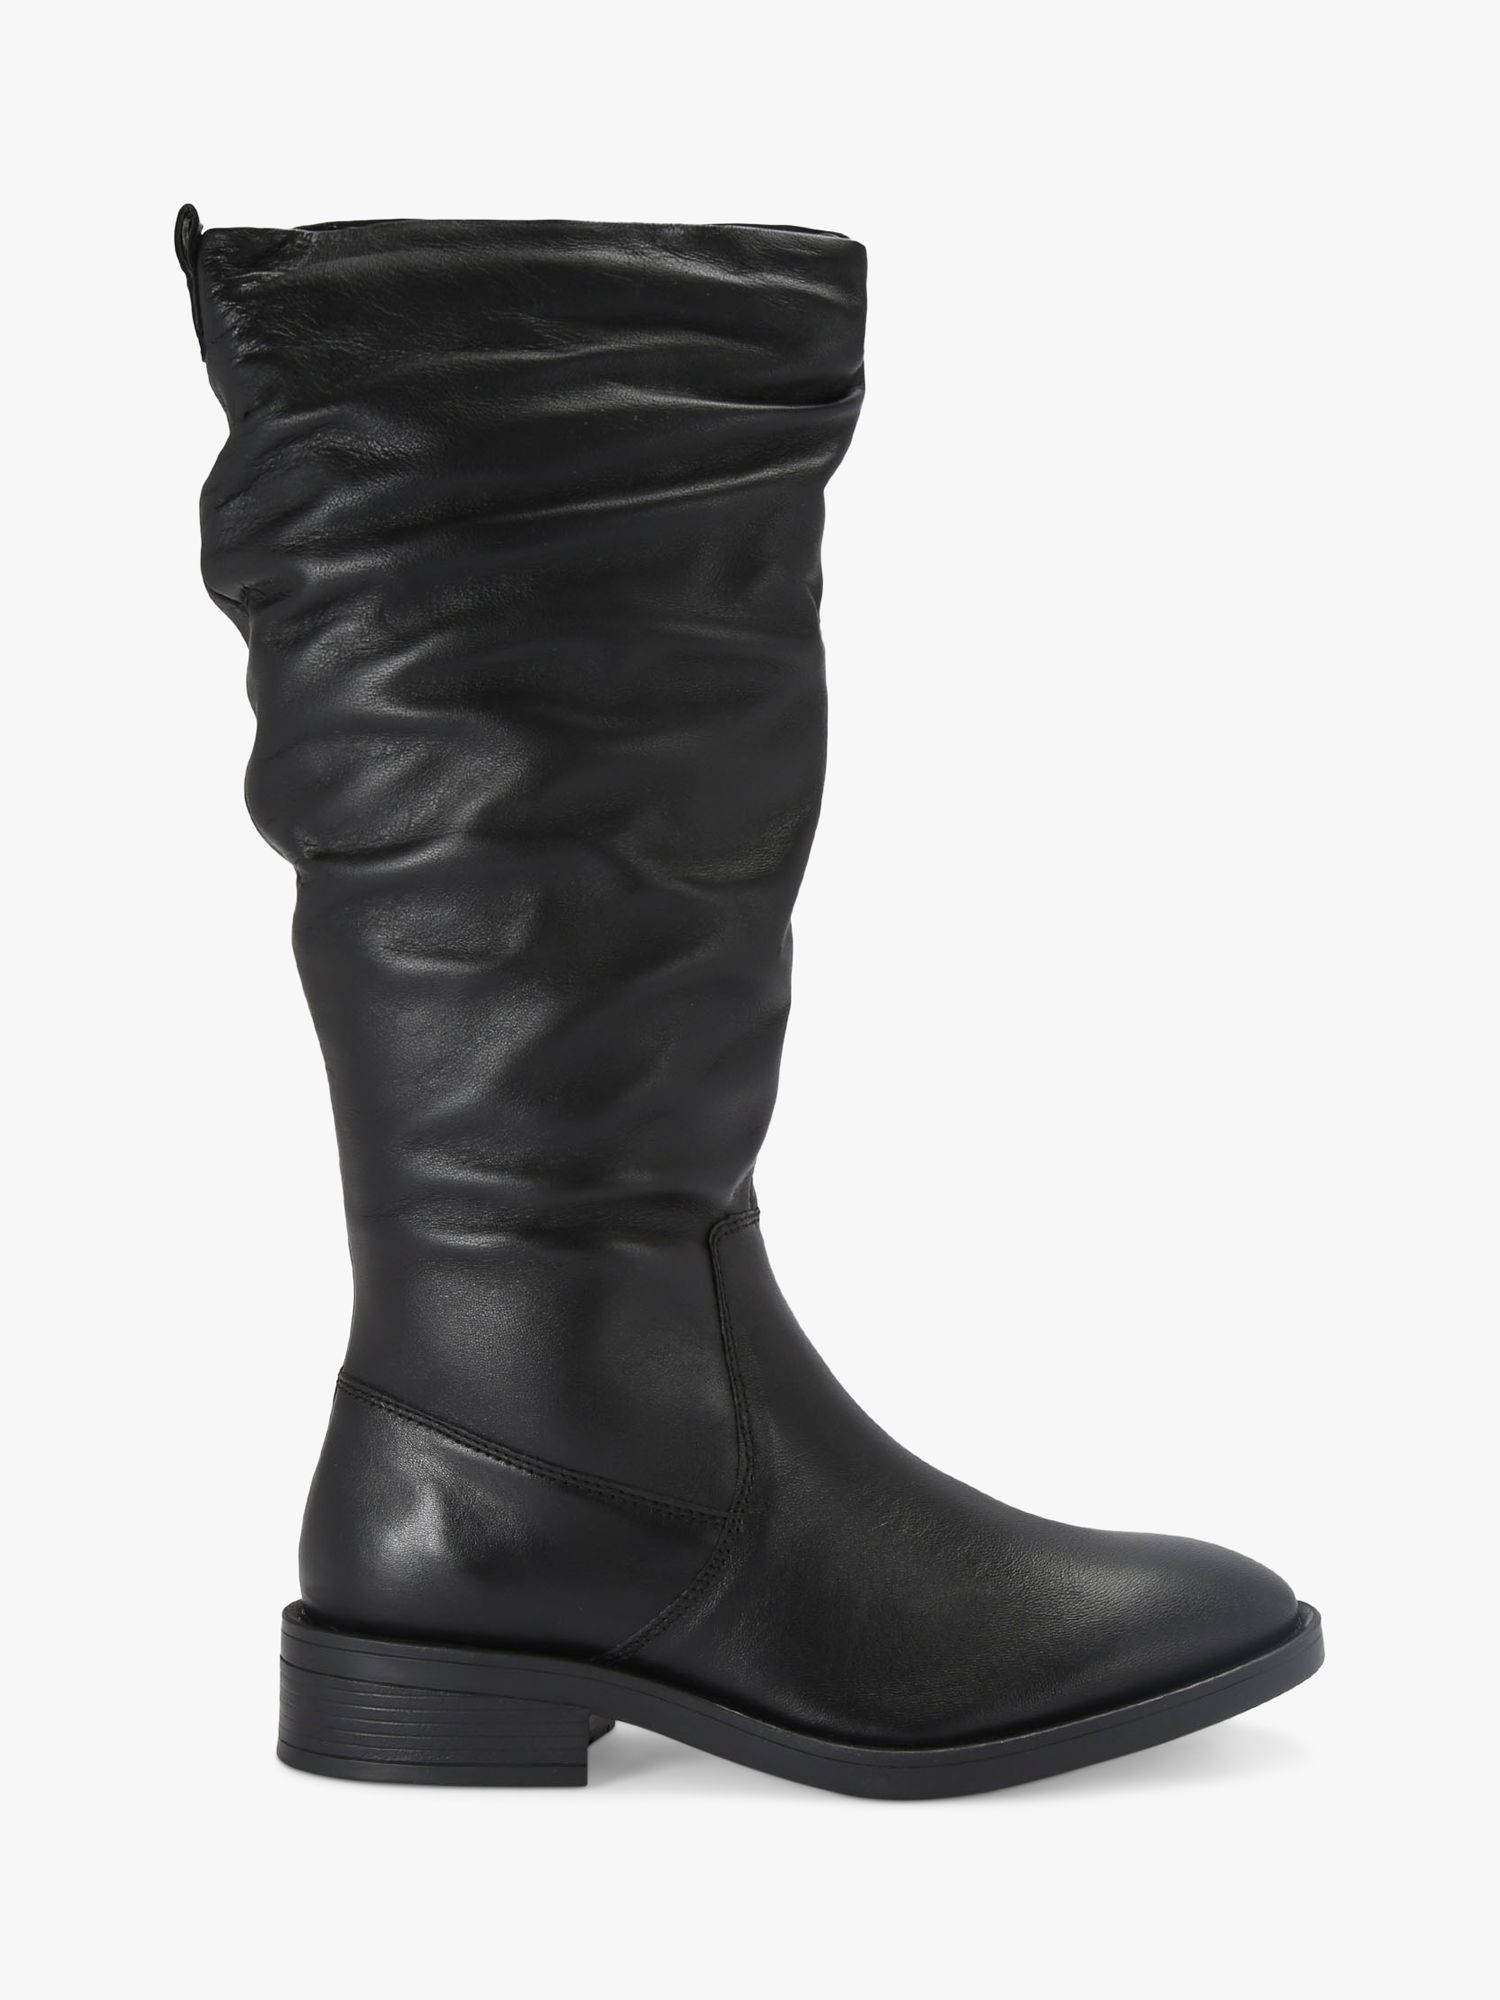 Carvela Parlour Leather Calf Boots, Black, 8